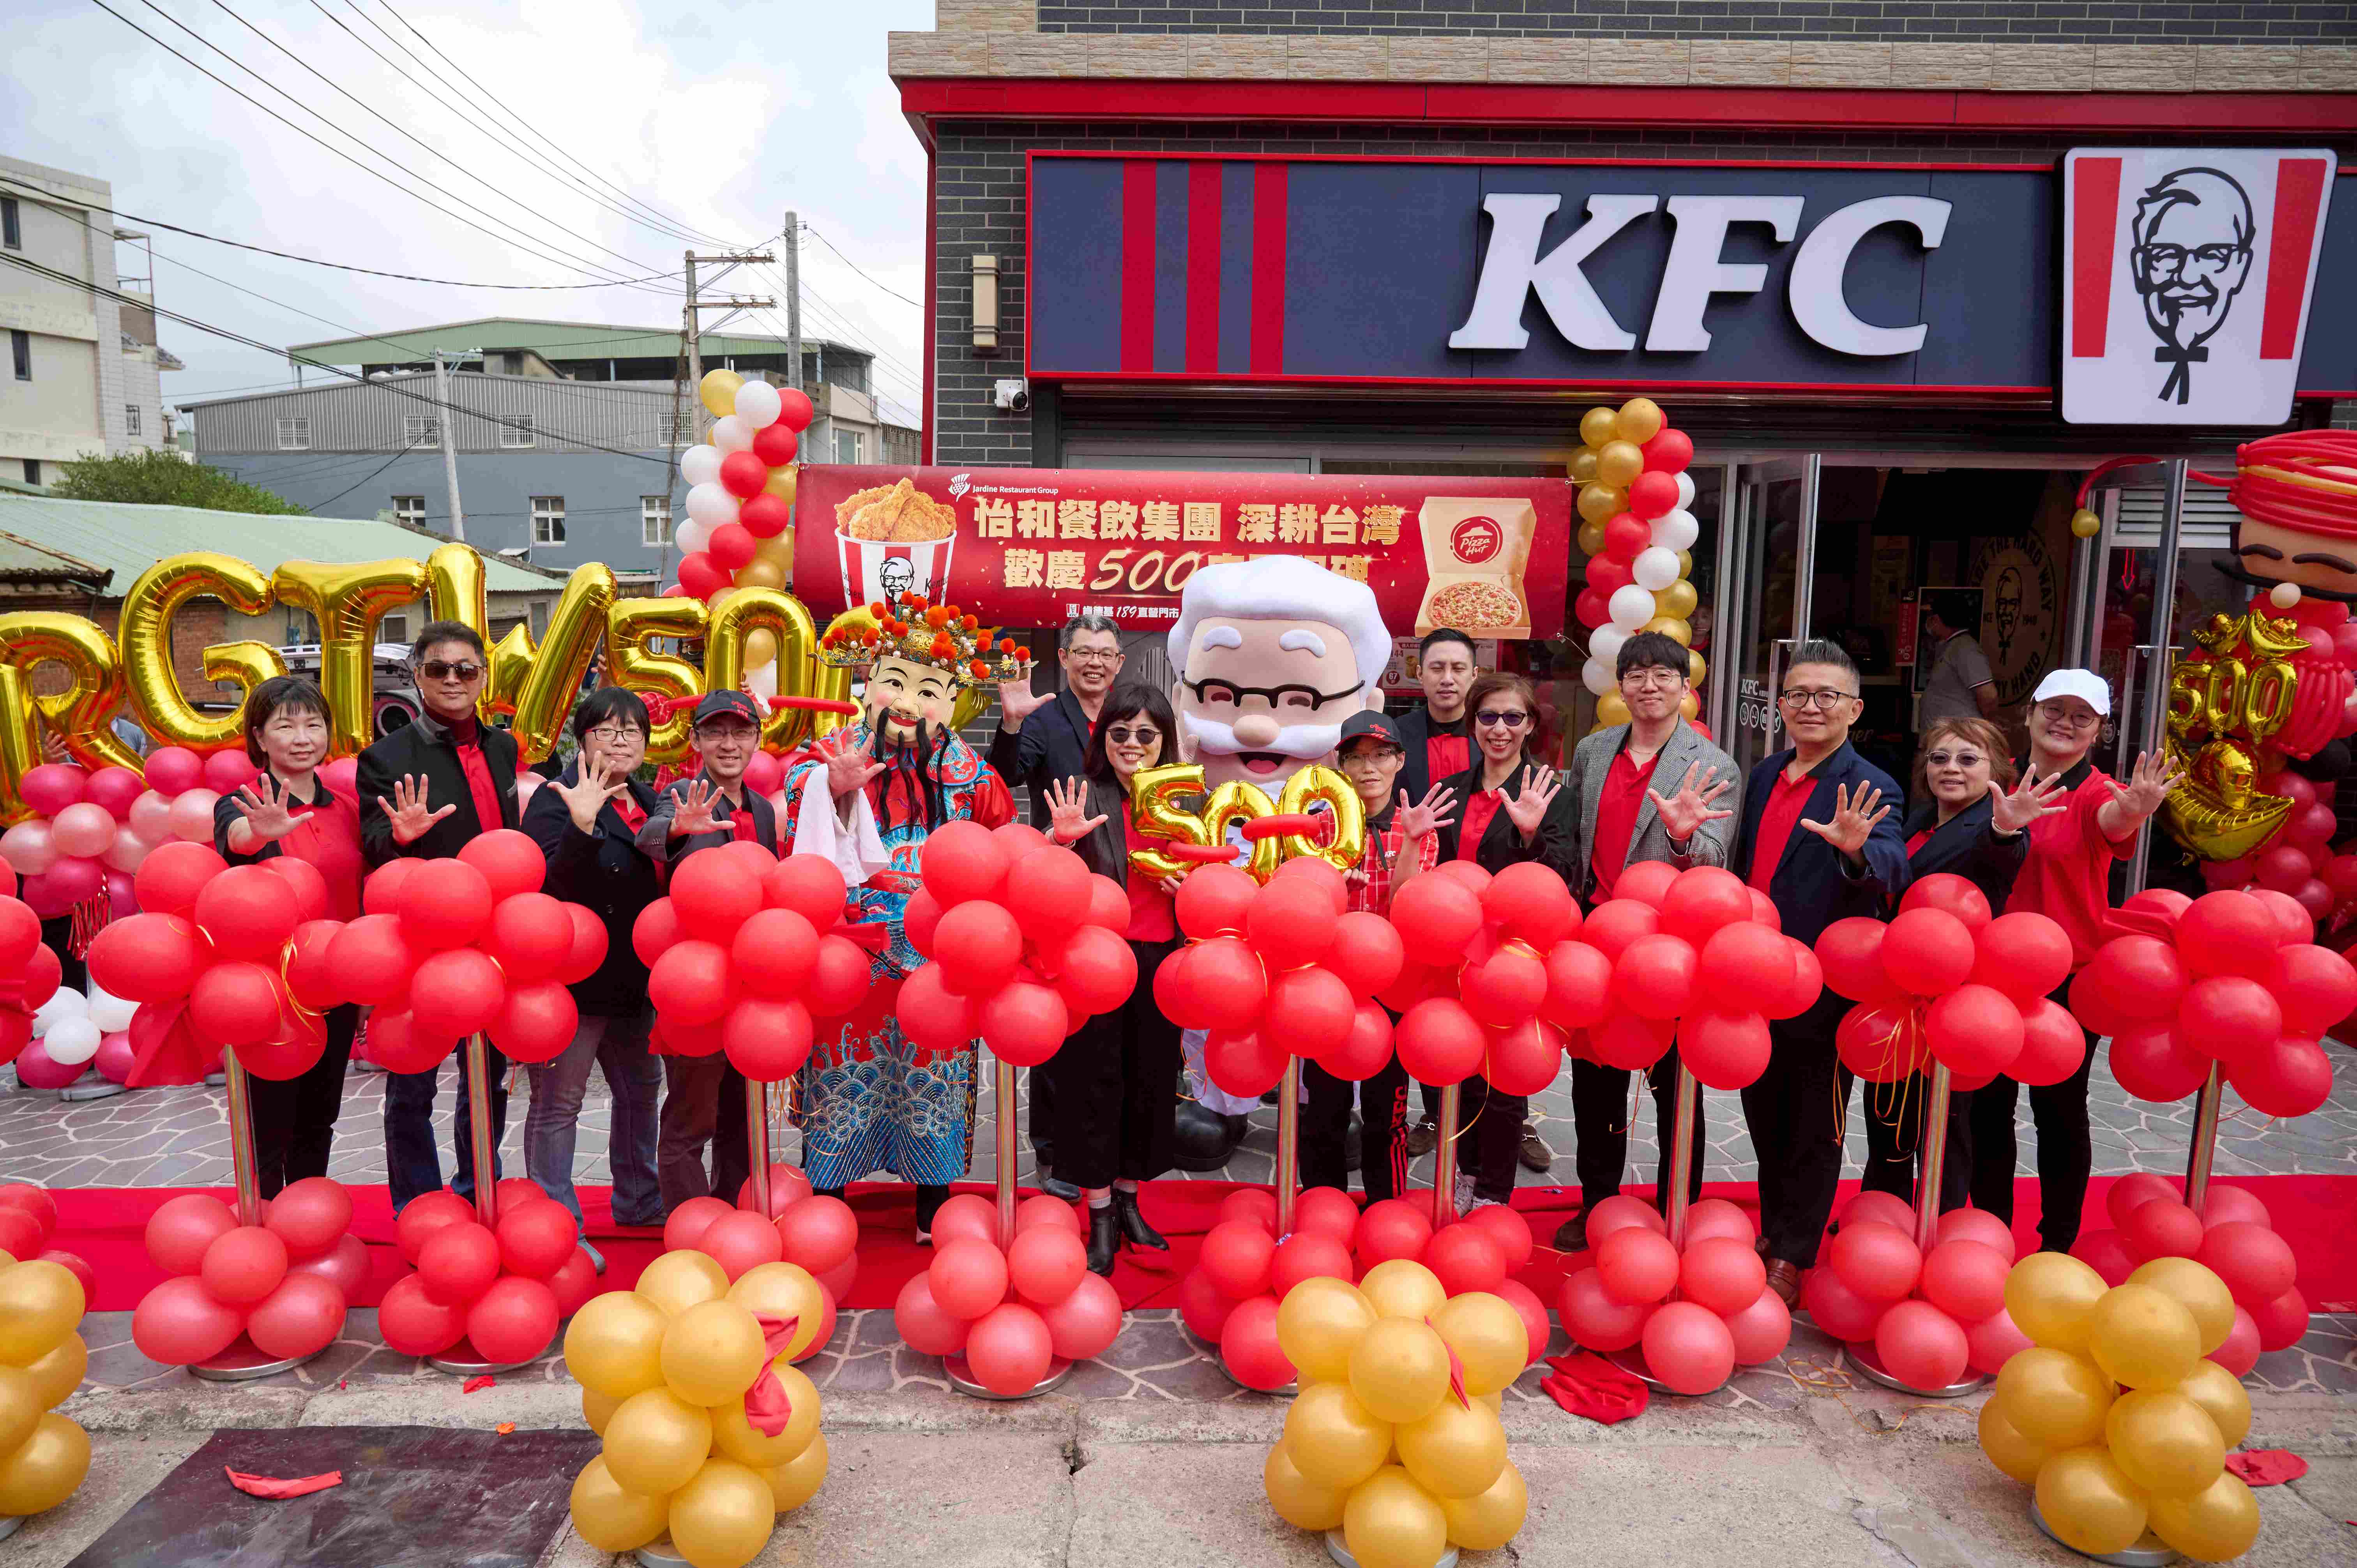 1990年代起積極投資具潛力的台灣市場，經營旗艦雙品牌『肯德基』和『必勝客』，業務持續穩健增長。於今天直營店數突破500家的重要里程碑。 - Jardine Restaurant Group celebrates the collective achievement of its flagship dual brands, KFC Taiwan and Pizza Hut Taiwan, reaching the milestone of 500 stores